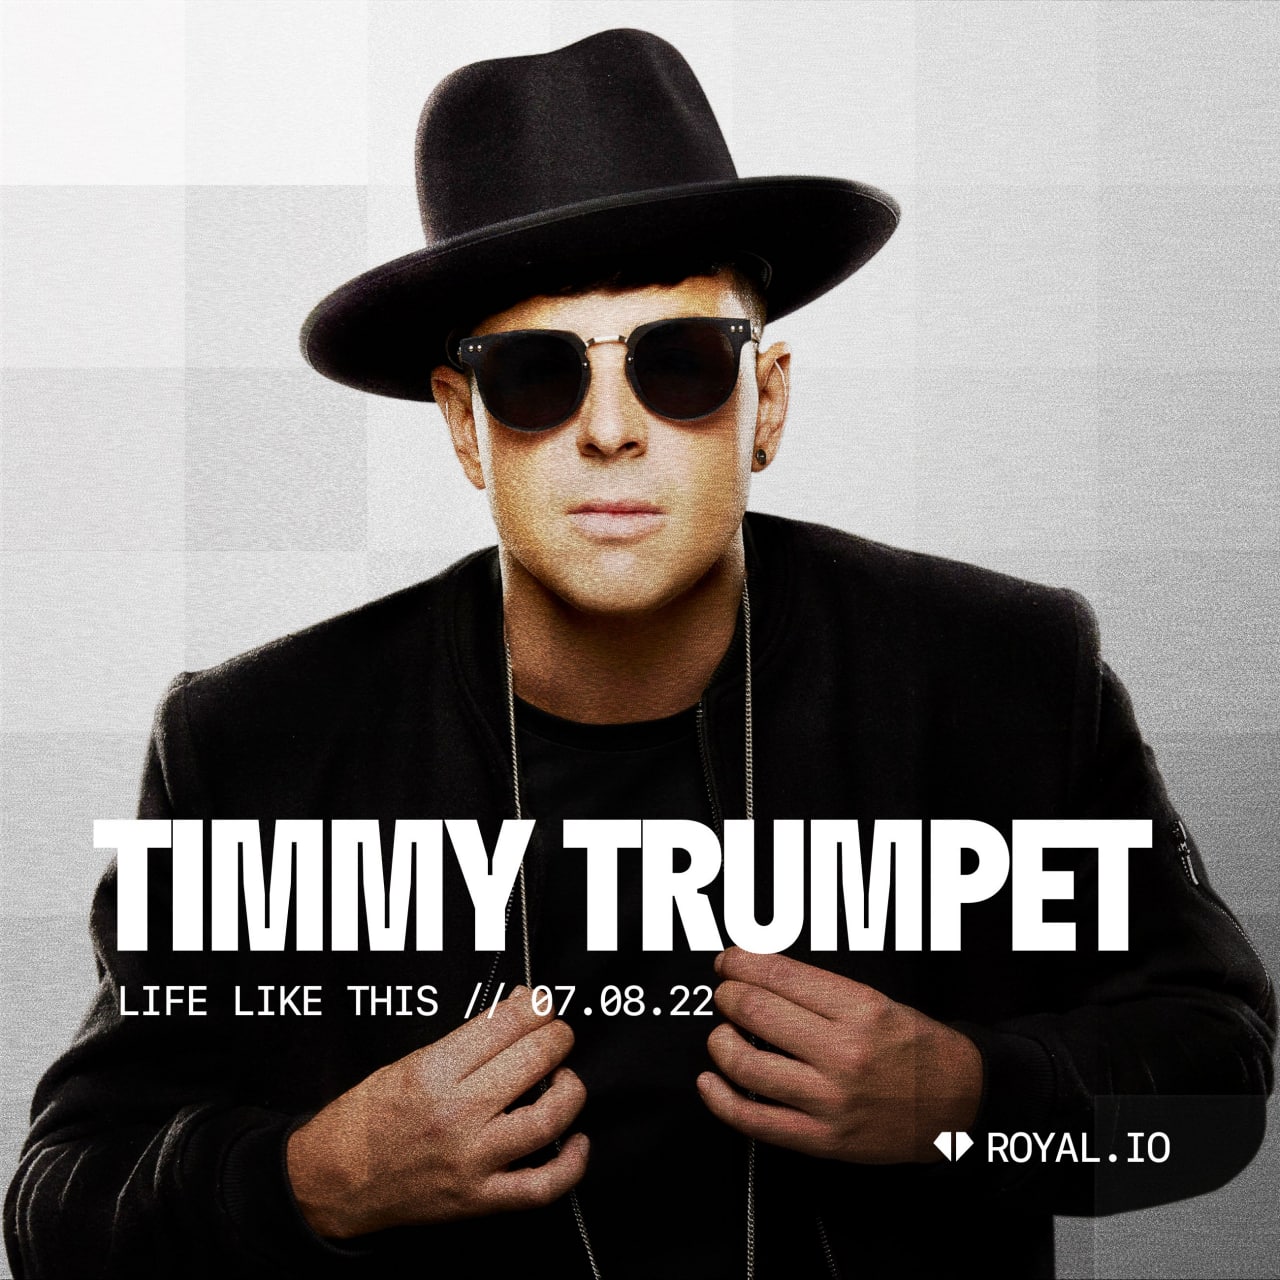 Timmy Trumpet își vinde piesele cu ajutorul companiei blockchain Royal